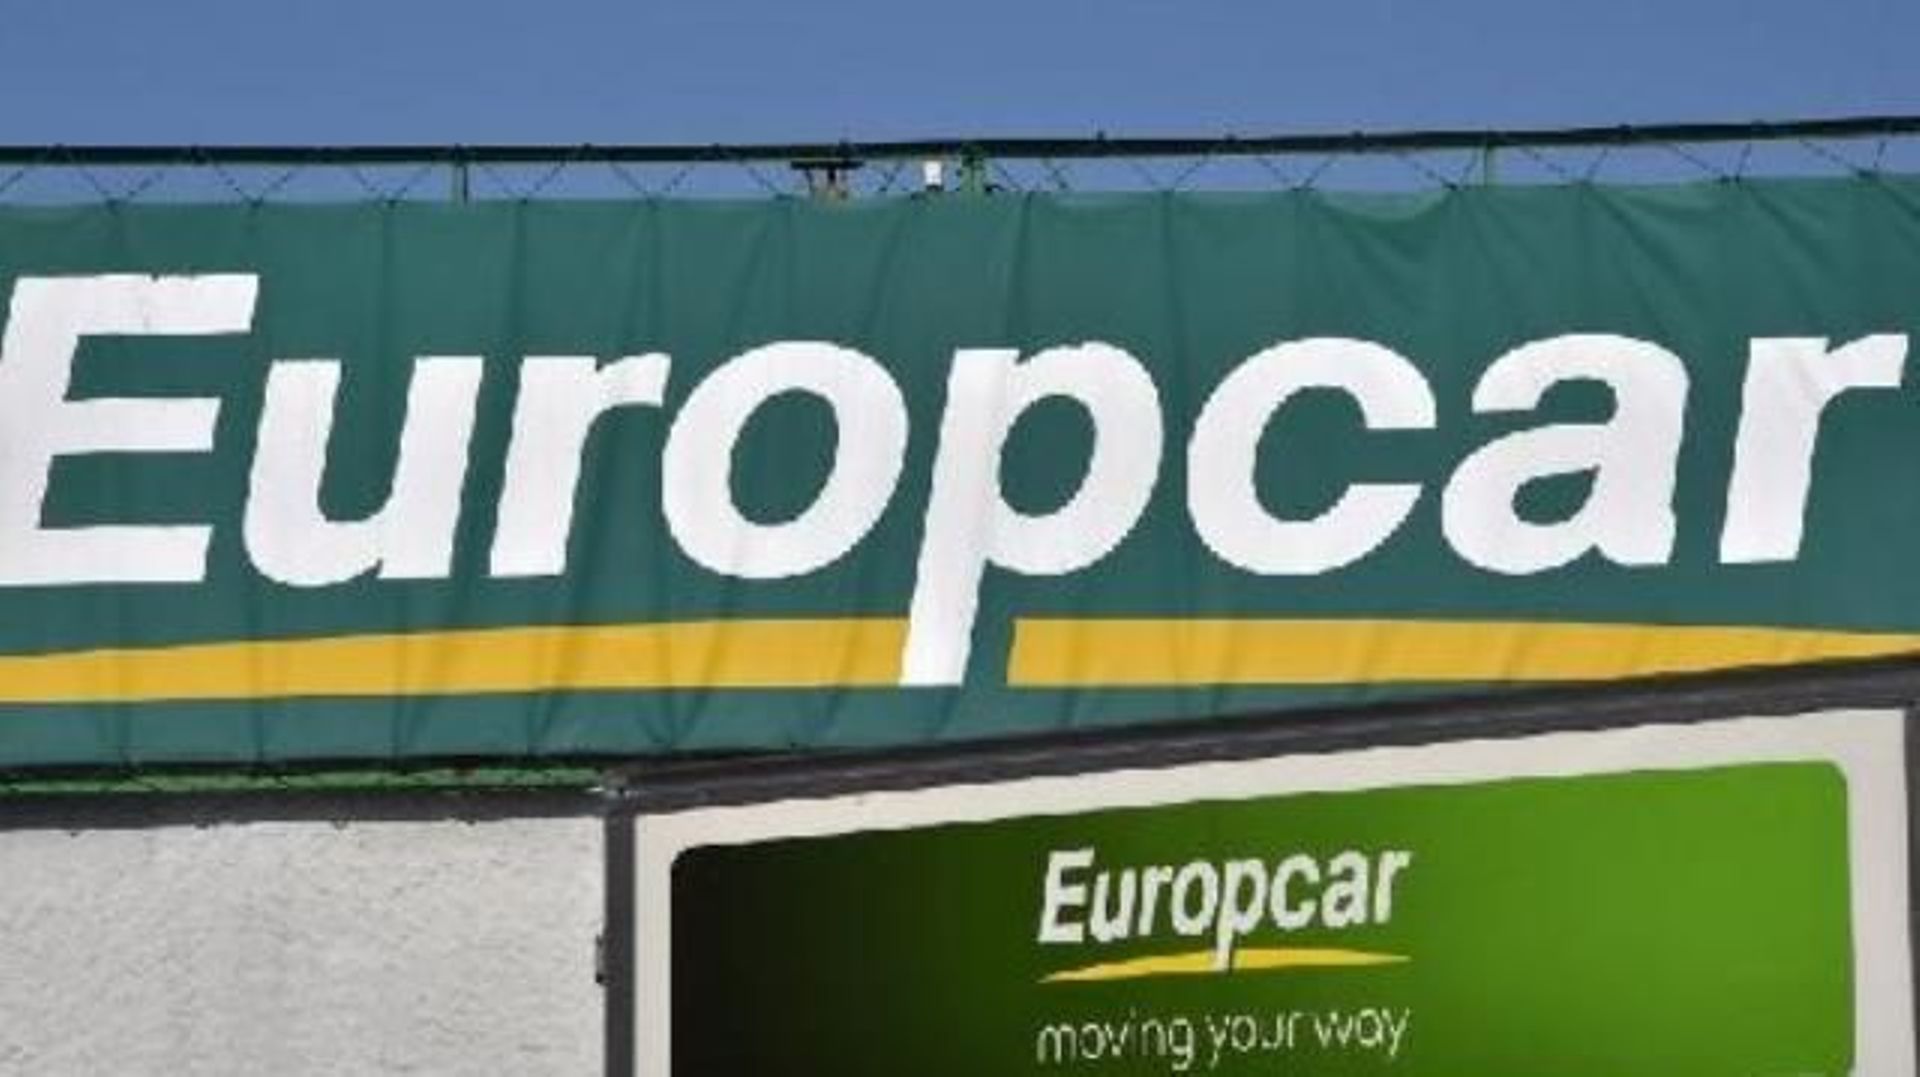 Le conseil d’administration d’Europcar approuve l’offre de rachat par Volkswagen